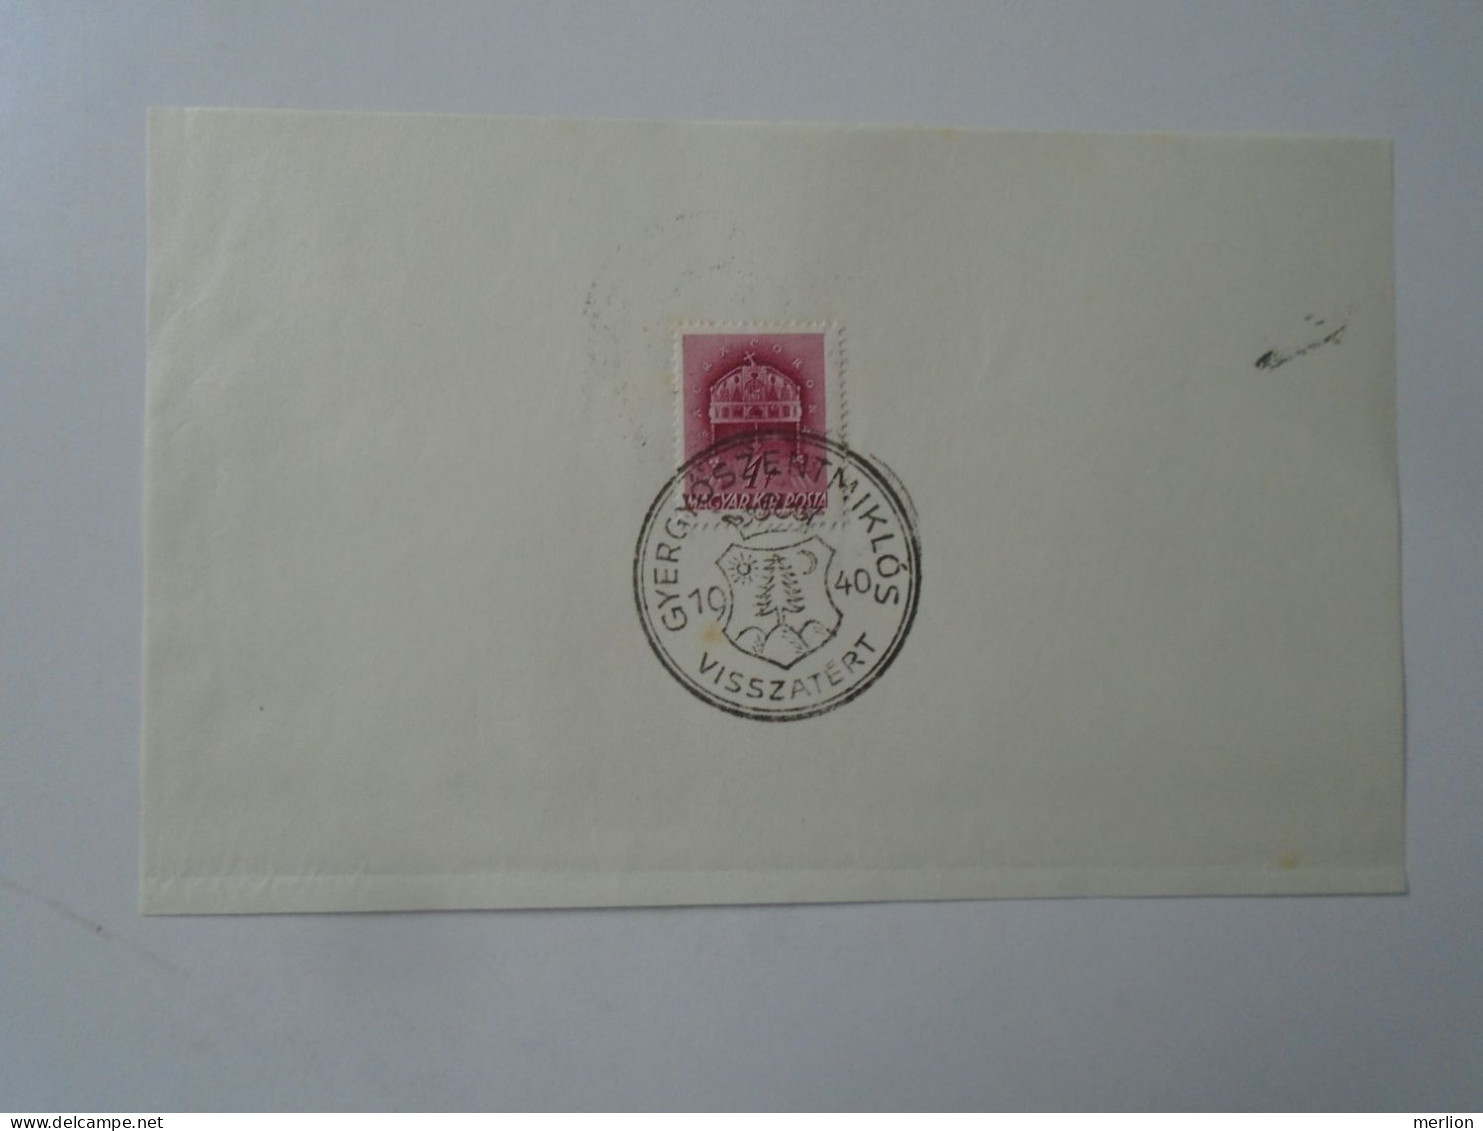 ZA451.43  Hungary -GYERGYÓSZENTMIKLÓS   Visszatért -Commemorative Postmark 1940 - Poststempel (Marcophilie)